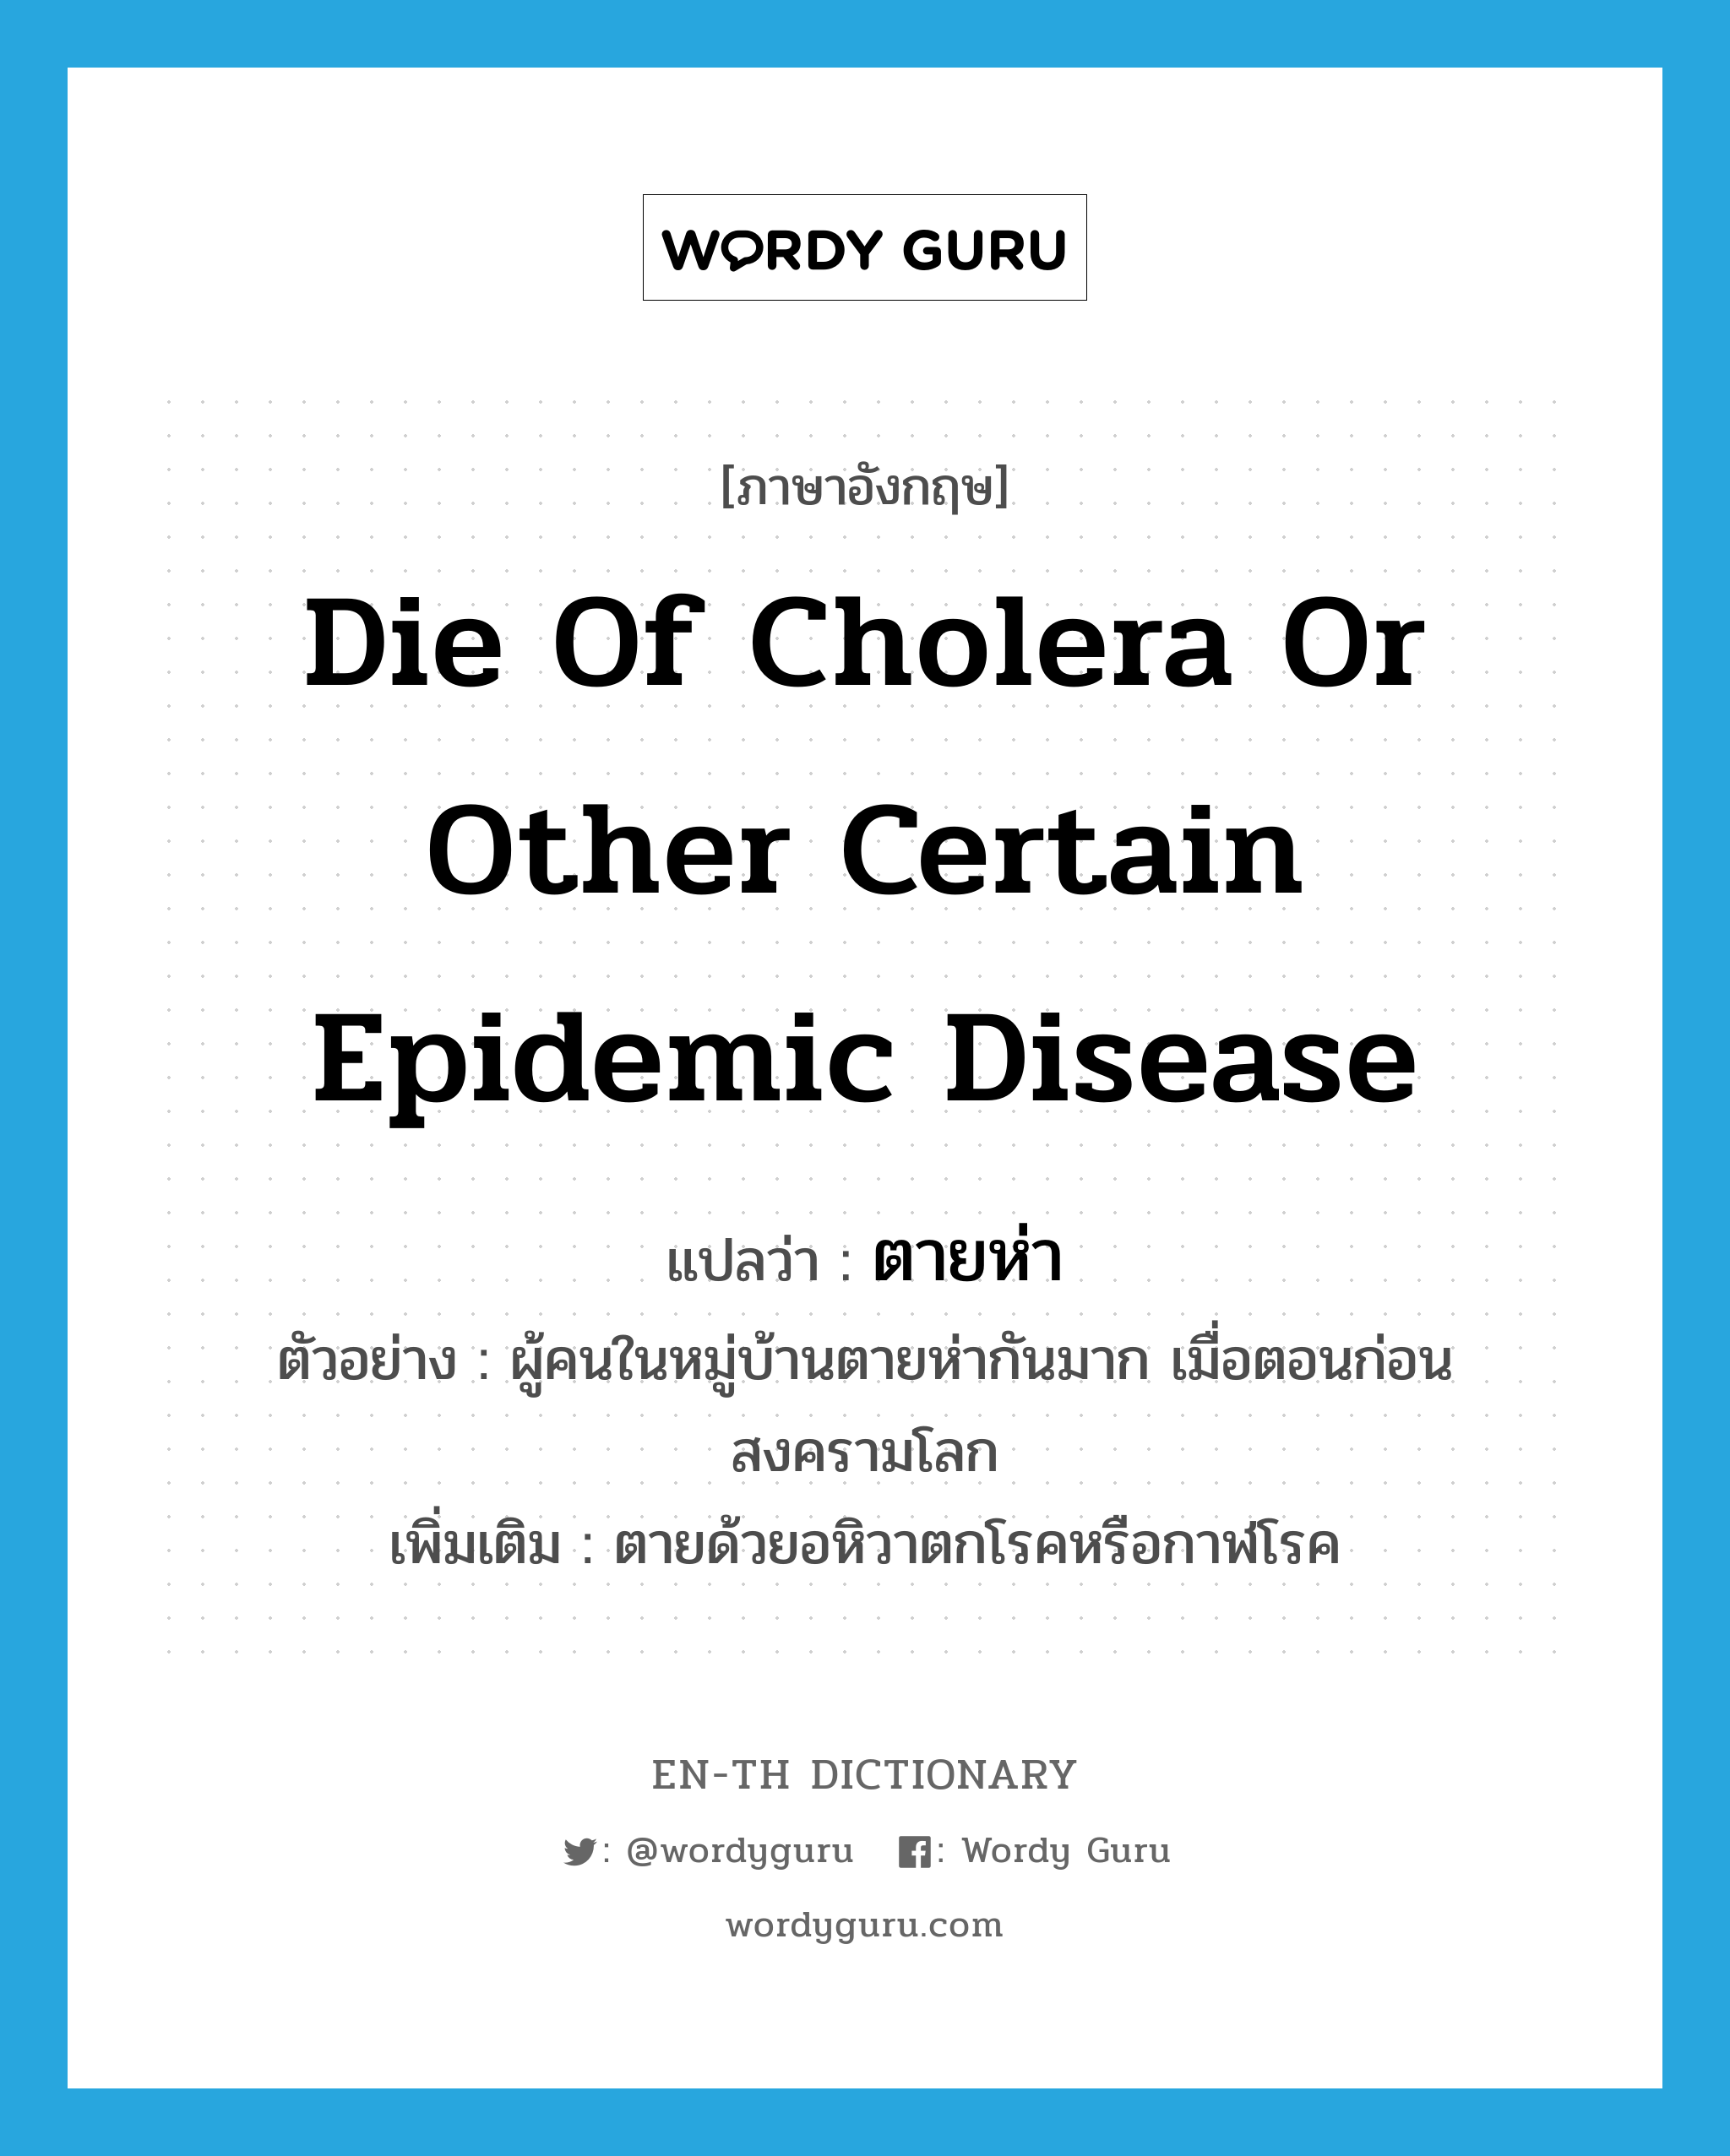 die of cholera or other certain epidemic disease แปลว่า?, คำศัพท์ภาษาอังกฤษ die of cholera or other certain epidemic disease แปลว่า ตายห่า ประเภท V ตัวอย่าง ผู้คนในหมู่บ้านตายห่ากันมาก เมื่อตอนก่อนสงครามโลก เพิ่มเติม ตายด้วยอหิวาตกโรคหรือกาฬโรค หมวด V